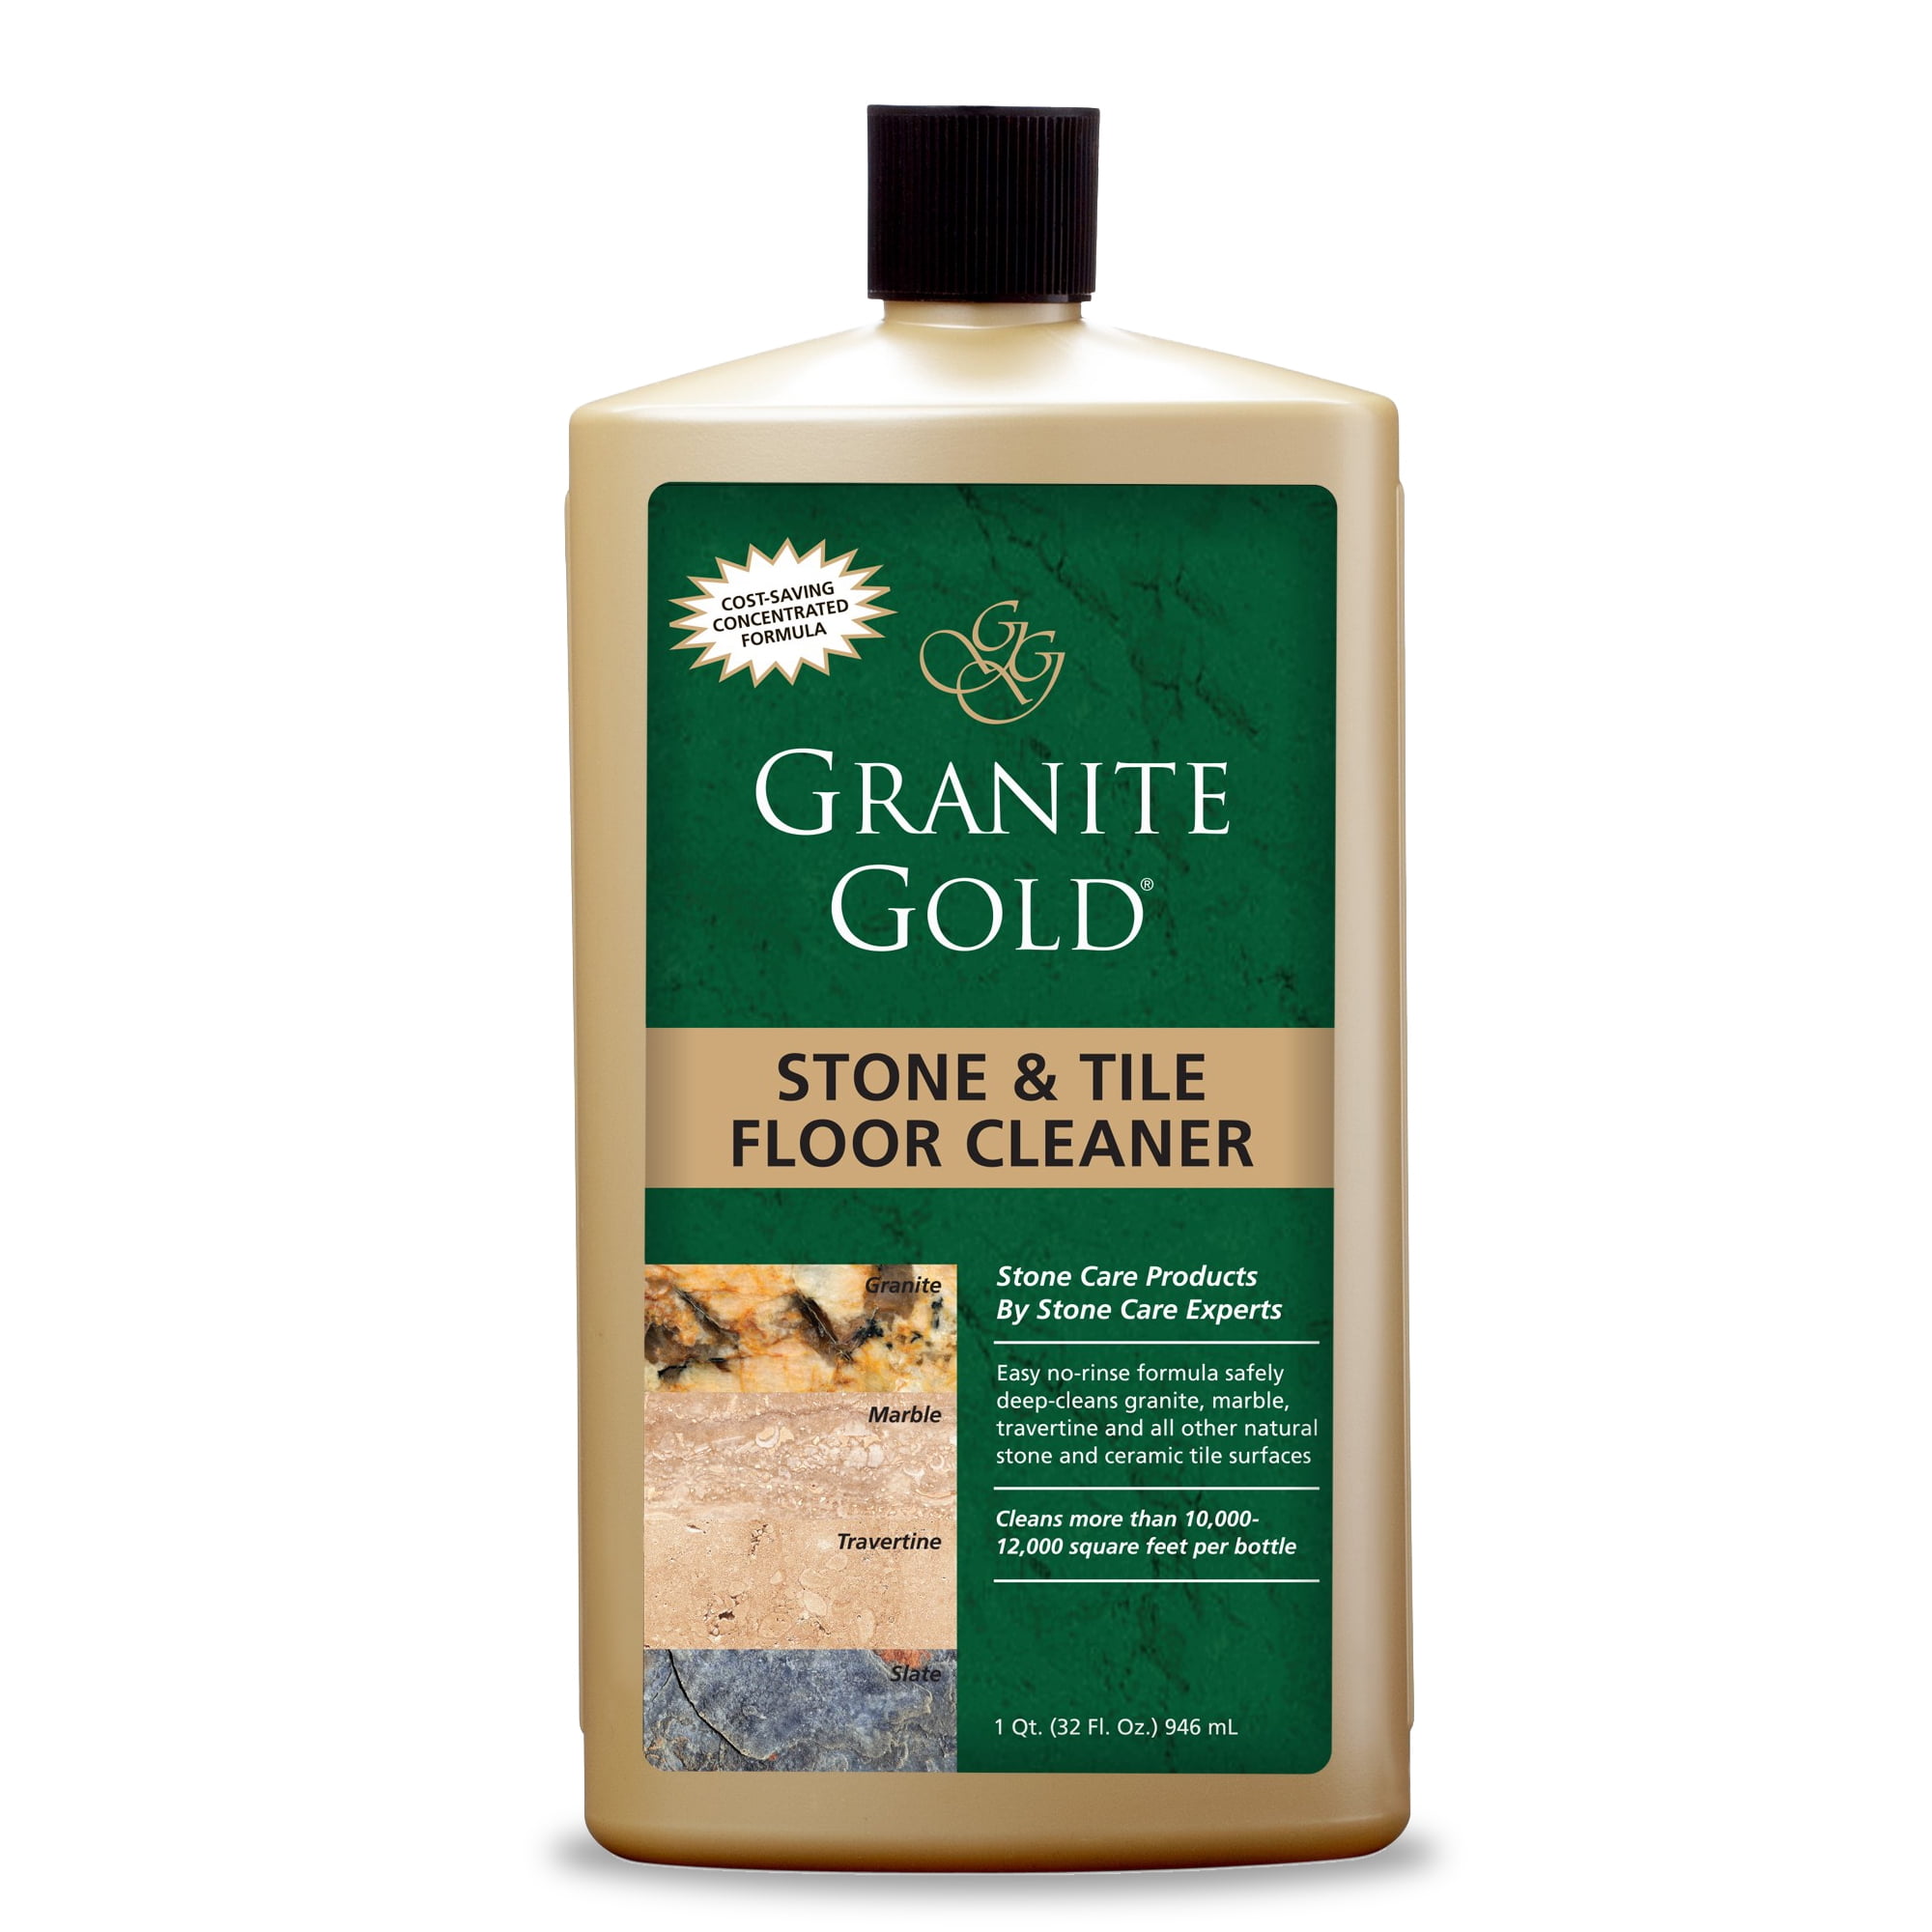 Granite Gold Stone Tile Floor Cleaner 32 Fl Oz Bottle, Ceramic Tile Floor Cleaner Recipe